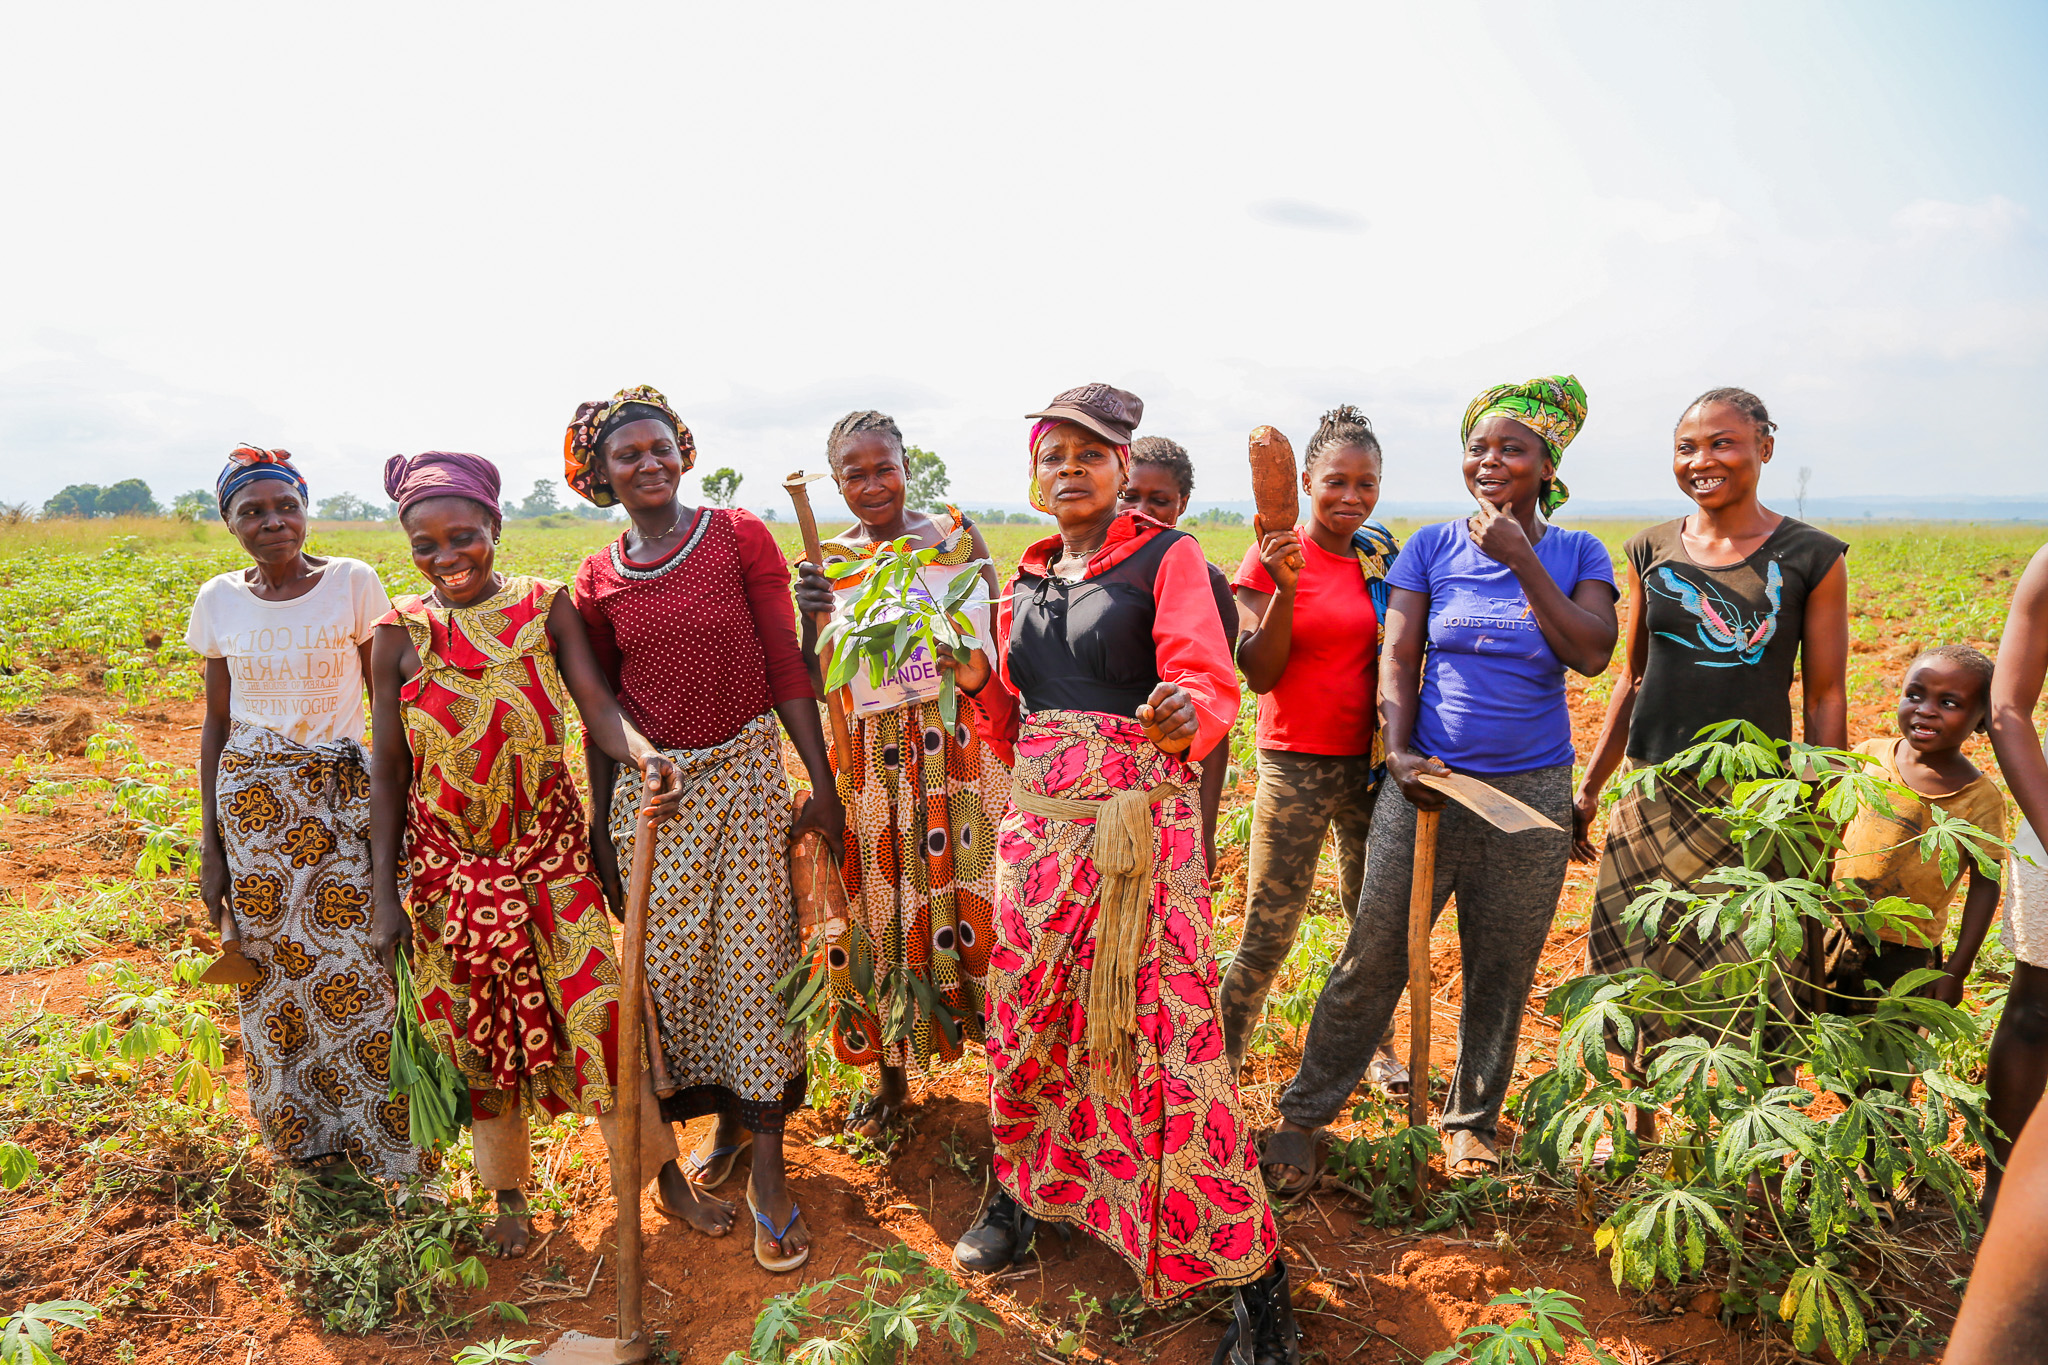 The women vegetable farmers of Kuakua